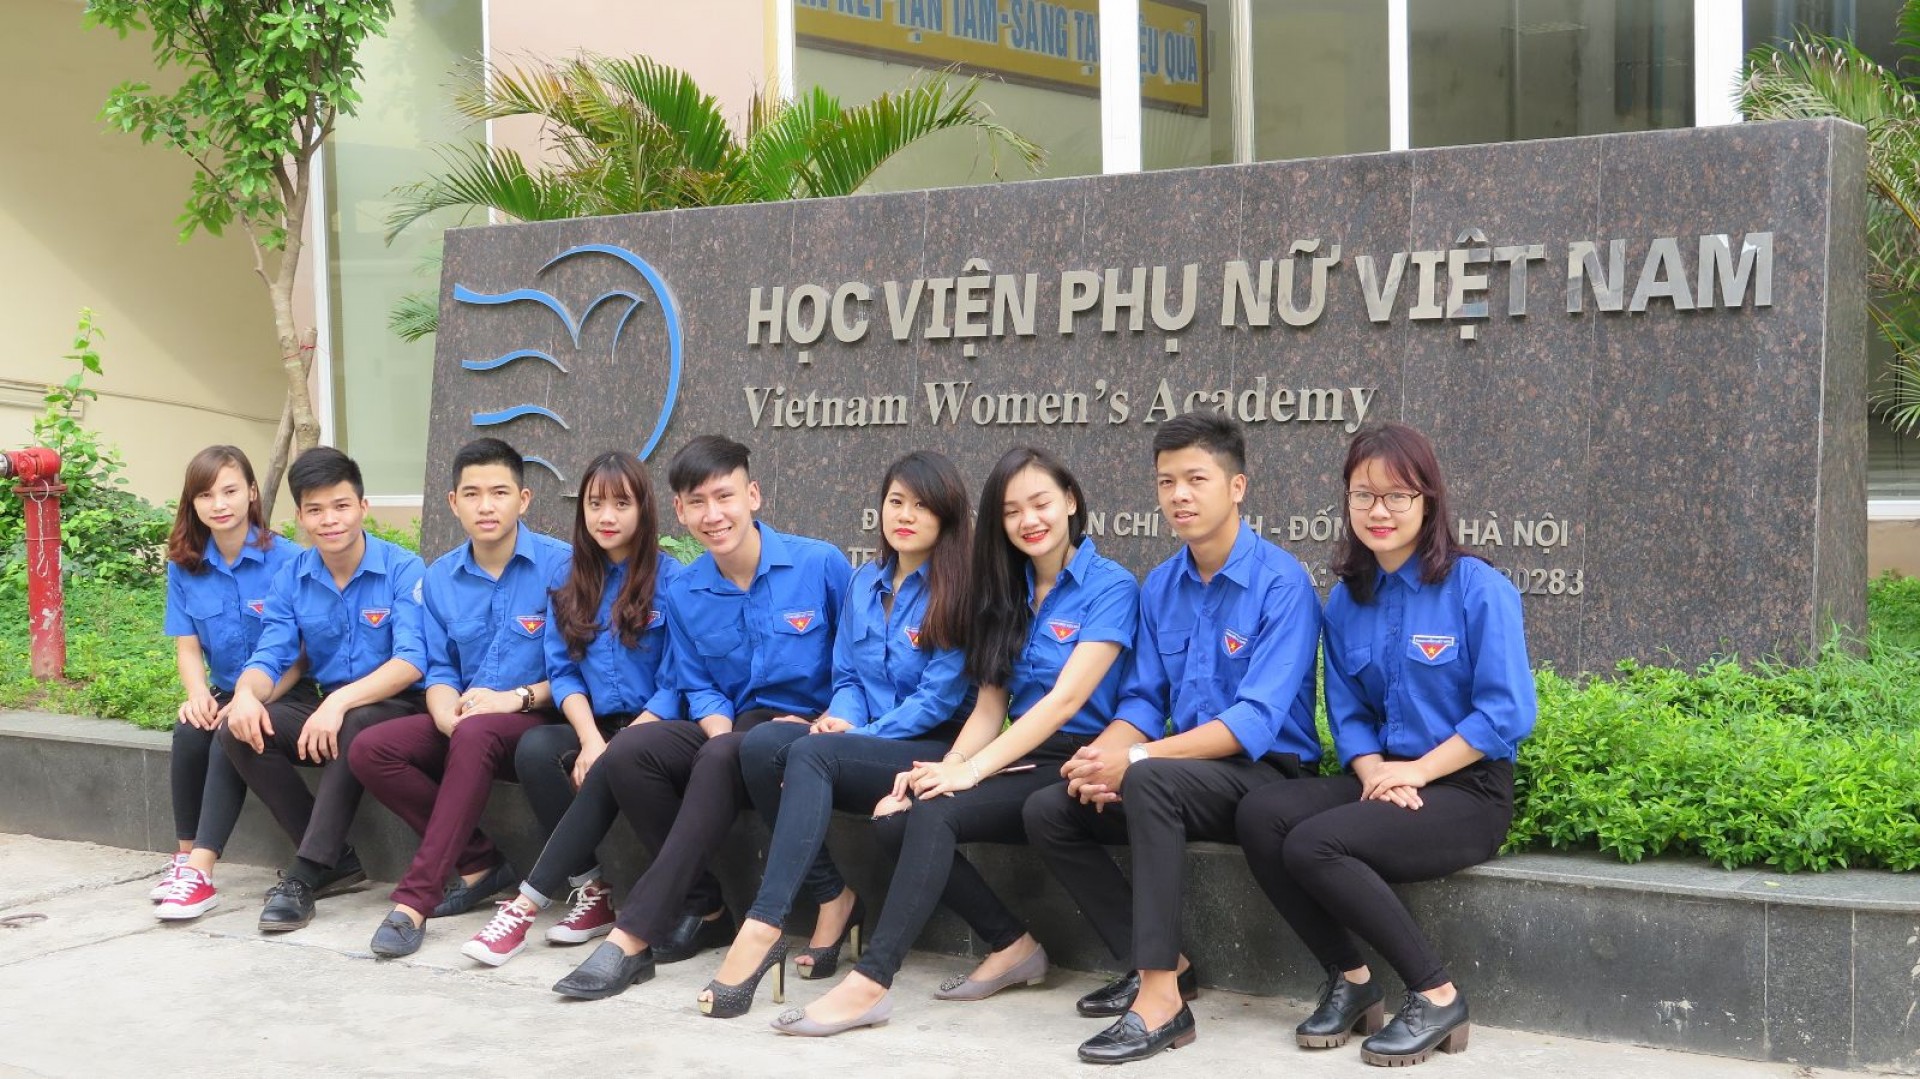 Mới nhất: Học viện Phụ nữ Việt Nam công bố phương án tuyển sinh 2018